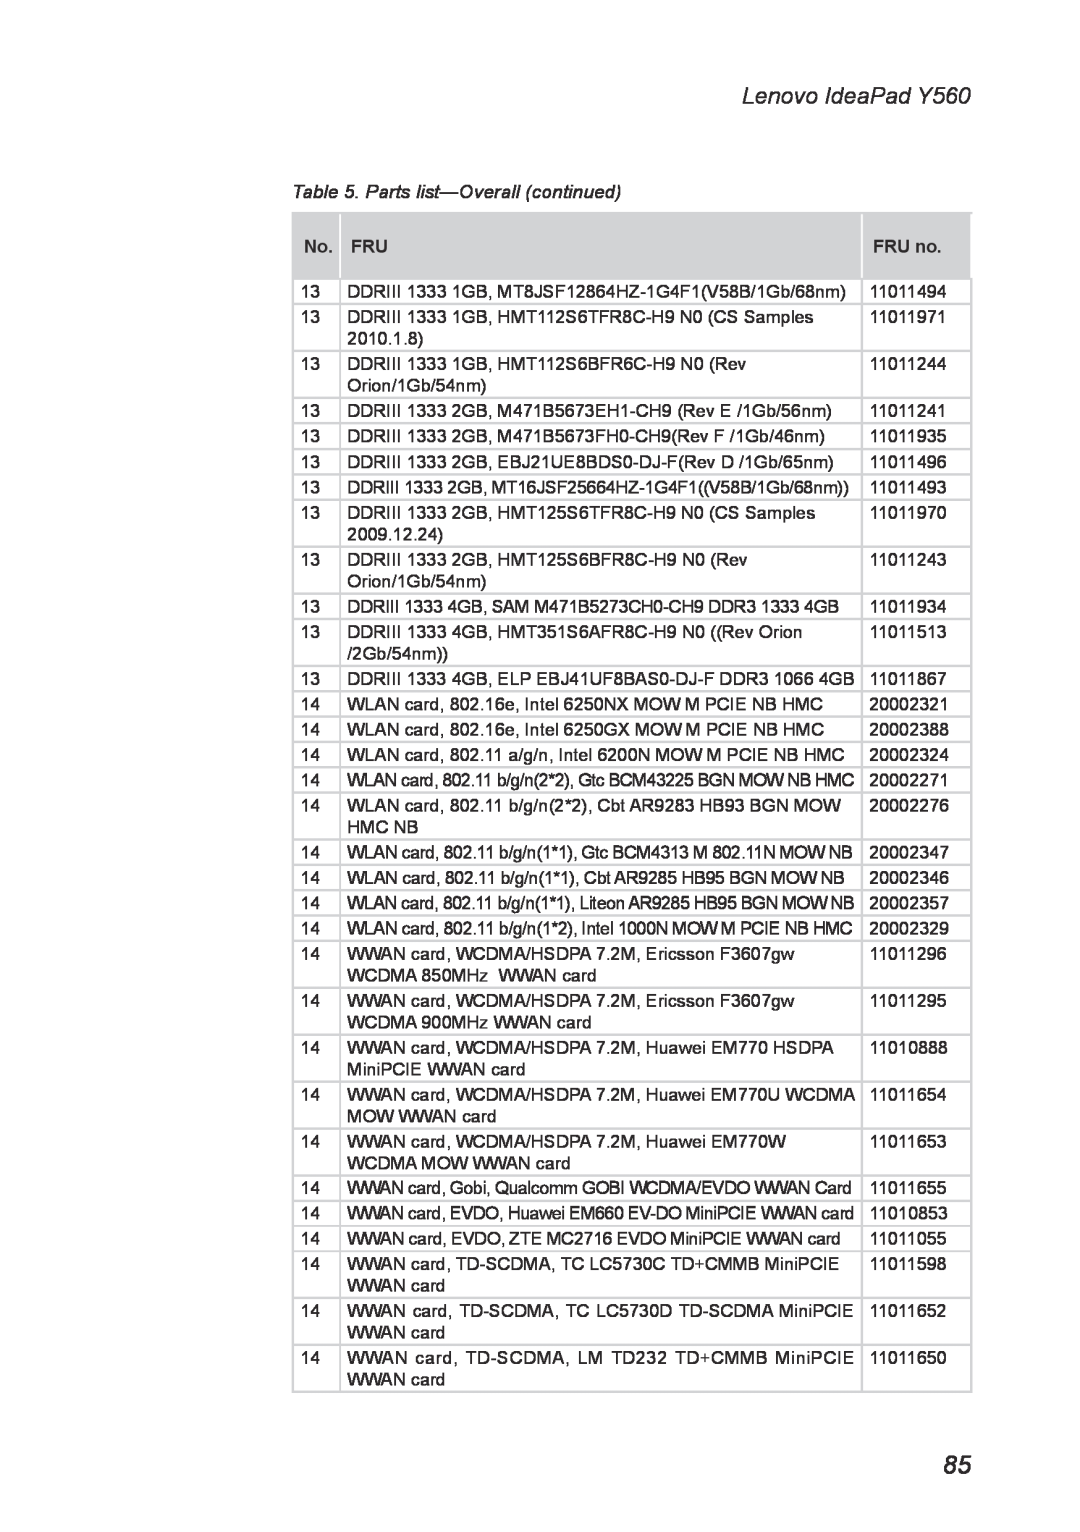 Lenovo manual Parts list-Overall continued, Lenovo IdeaPad Y560, No. FRU, FRU no 